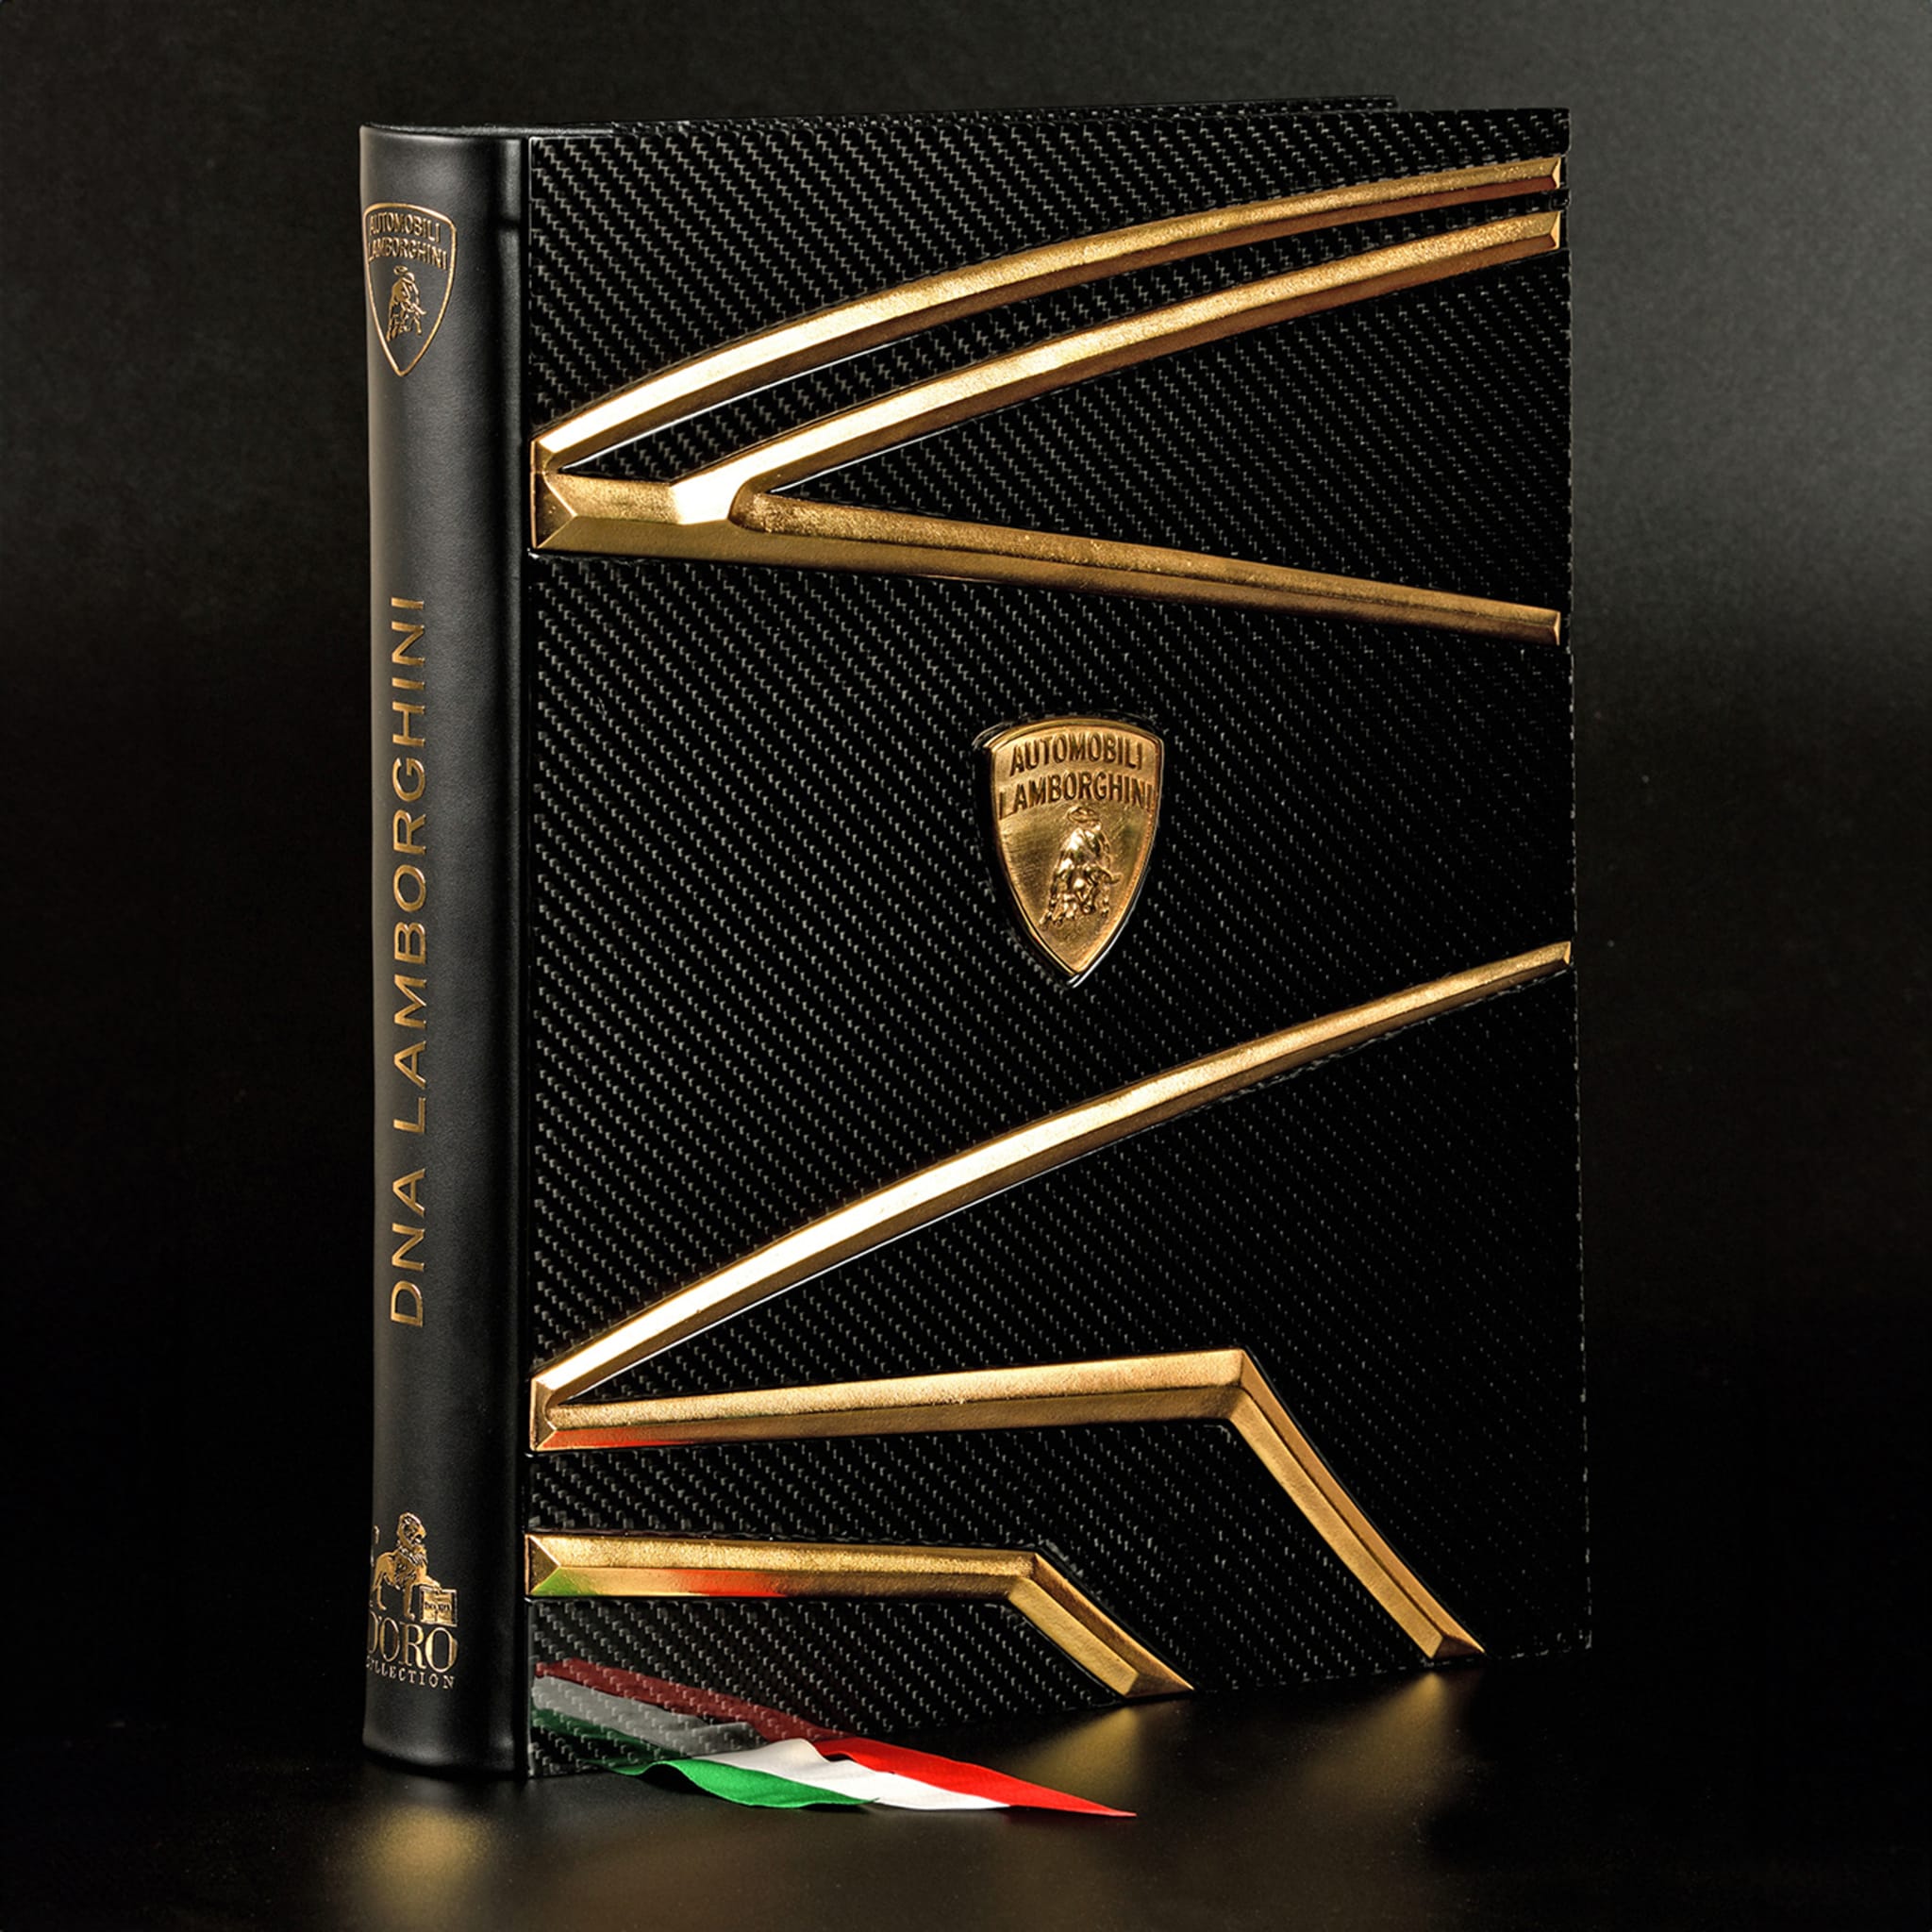 Dna Lamborghini II Edition Book - Alternative view 1